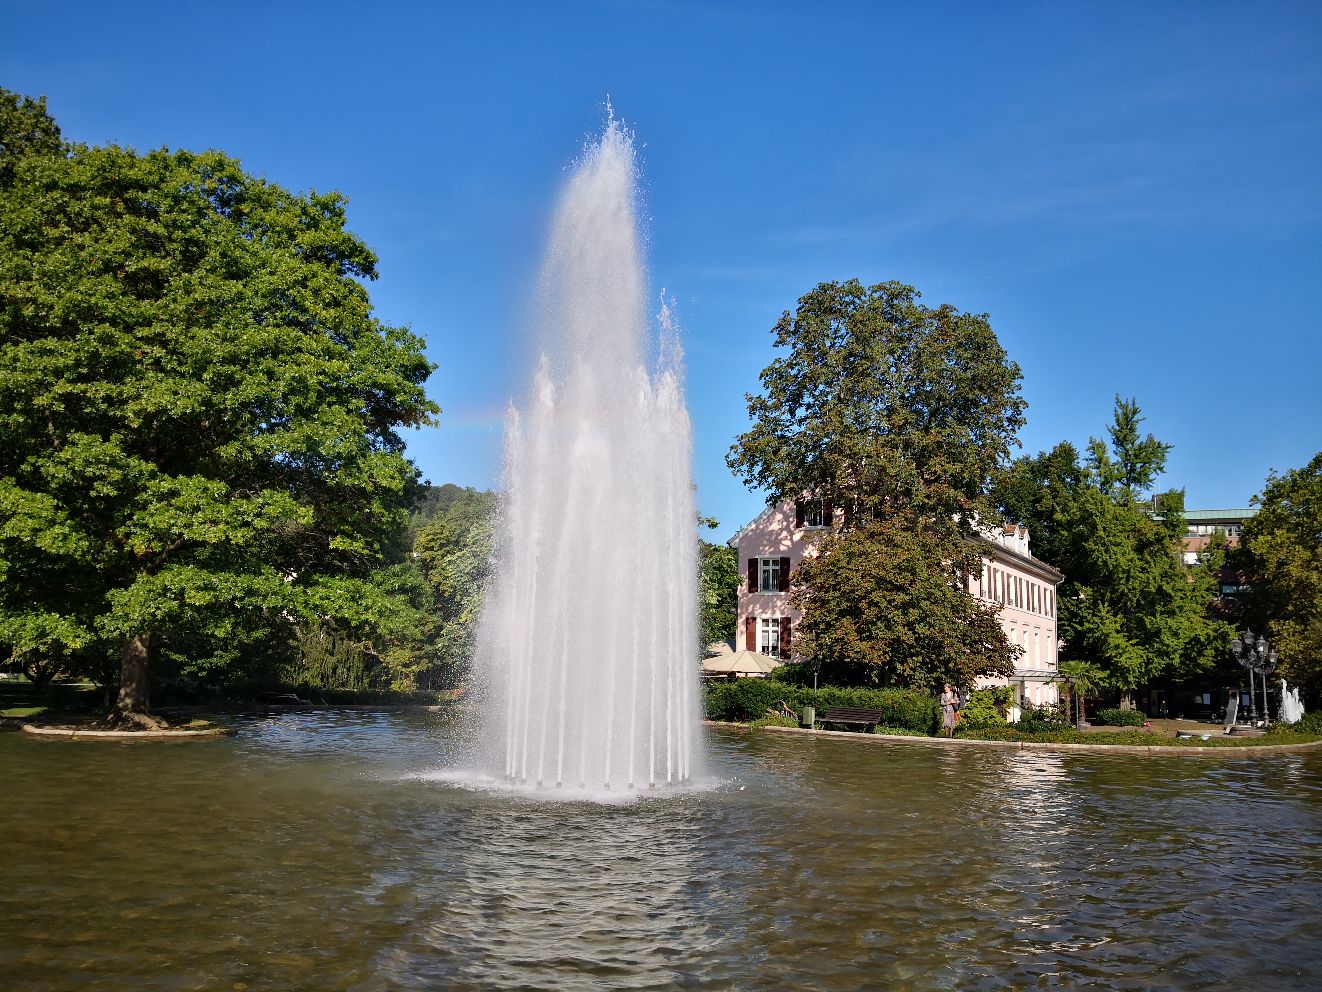 “巴登•巴登”在德语里是“温泉•温泉”的意思，巴登•巴登城是德国的一个度假休闲城市，城里有著名的弗里